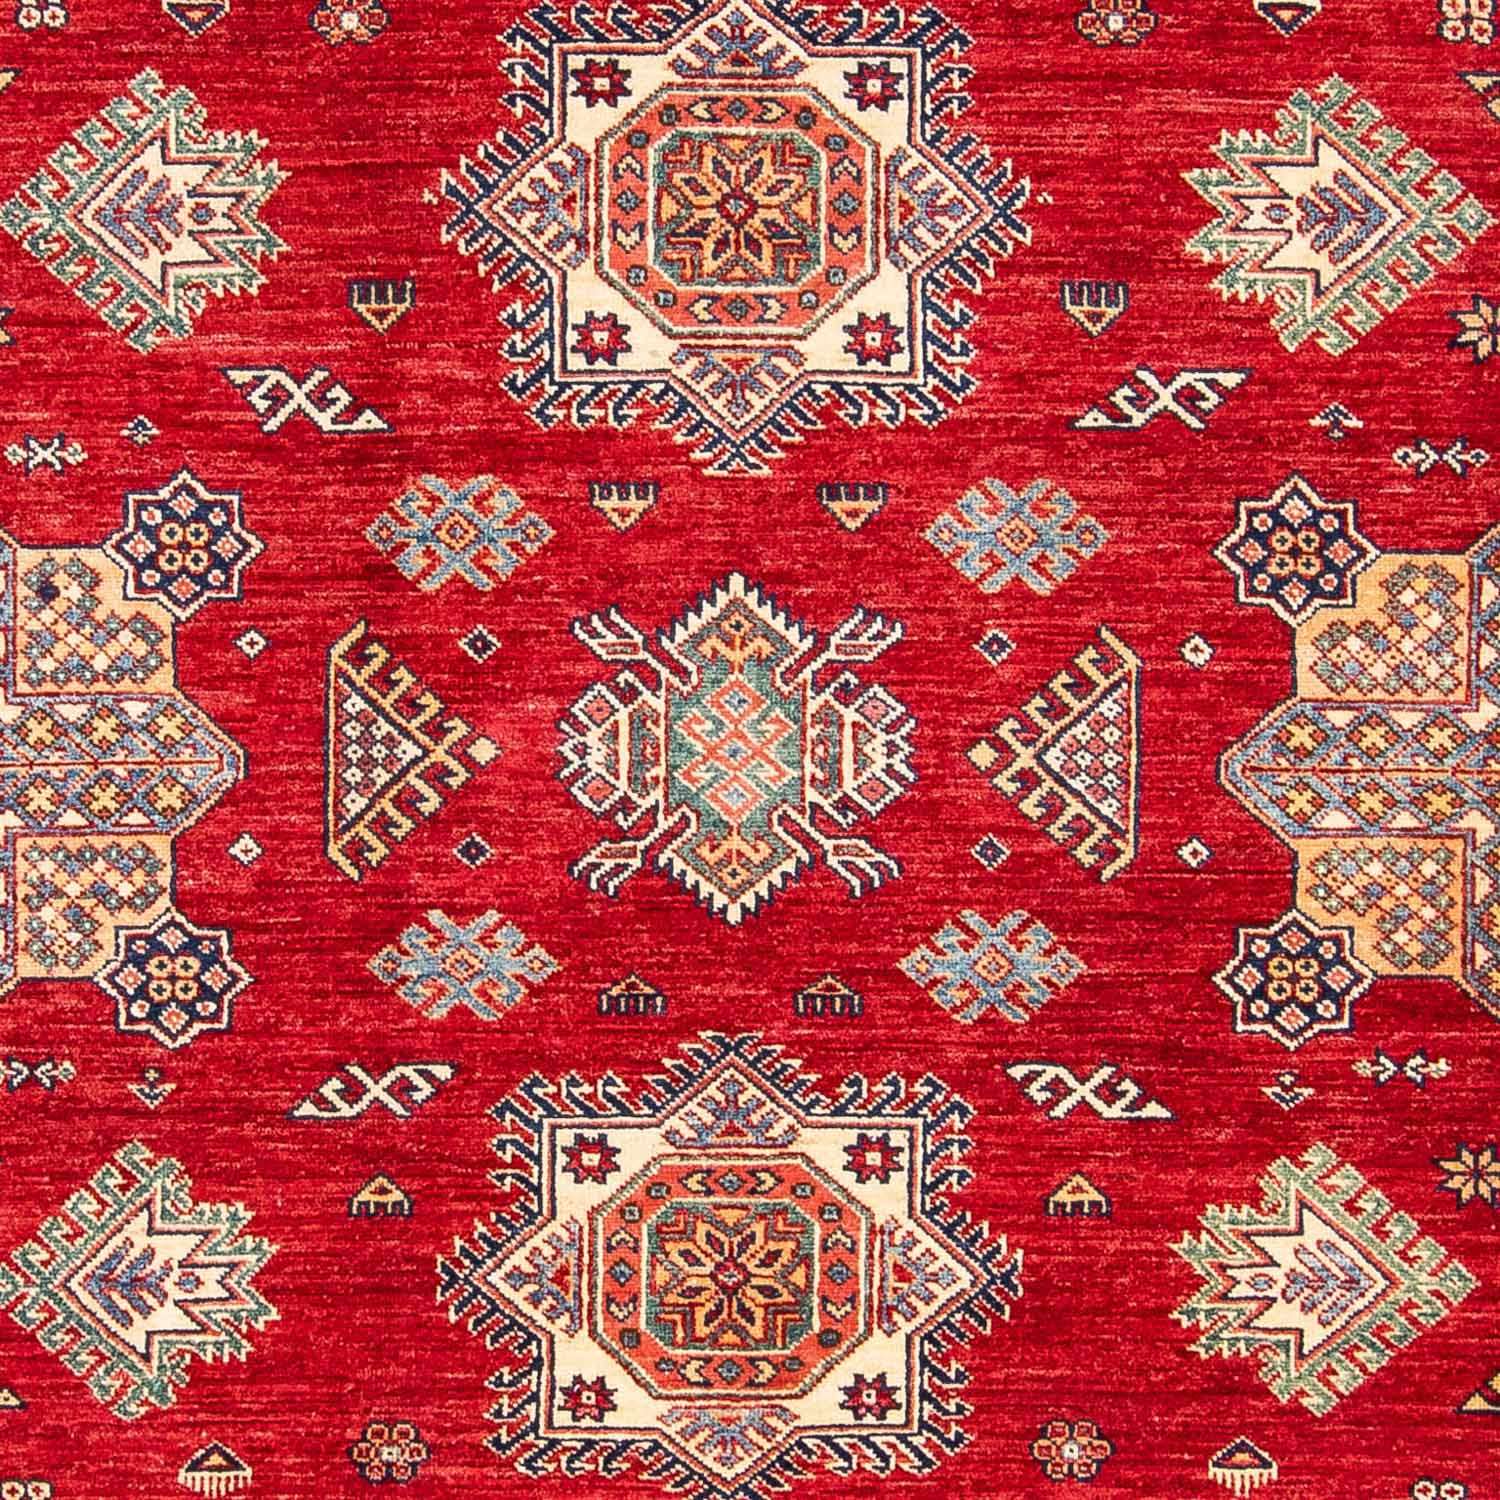 Ziegler Rug - Kazak - 293 x 207 cm - red